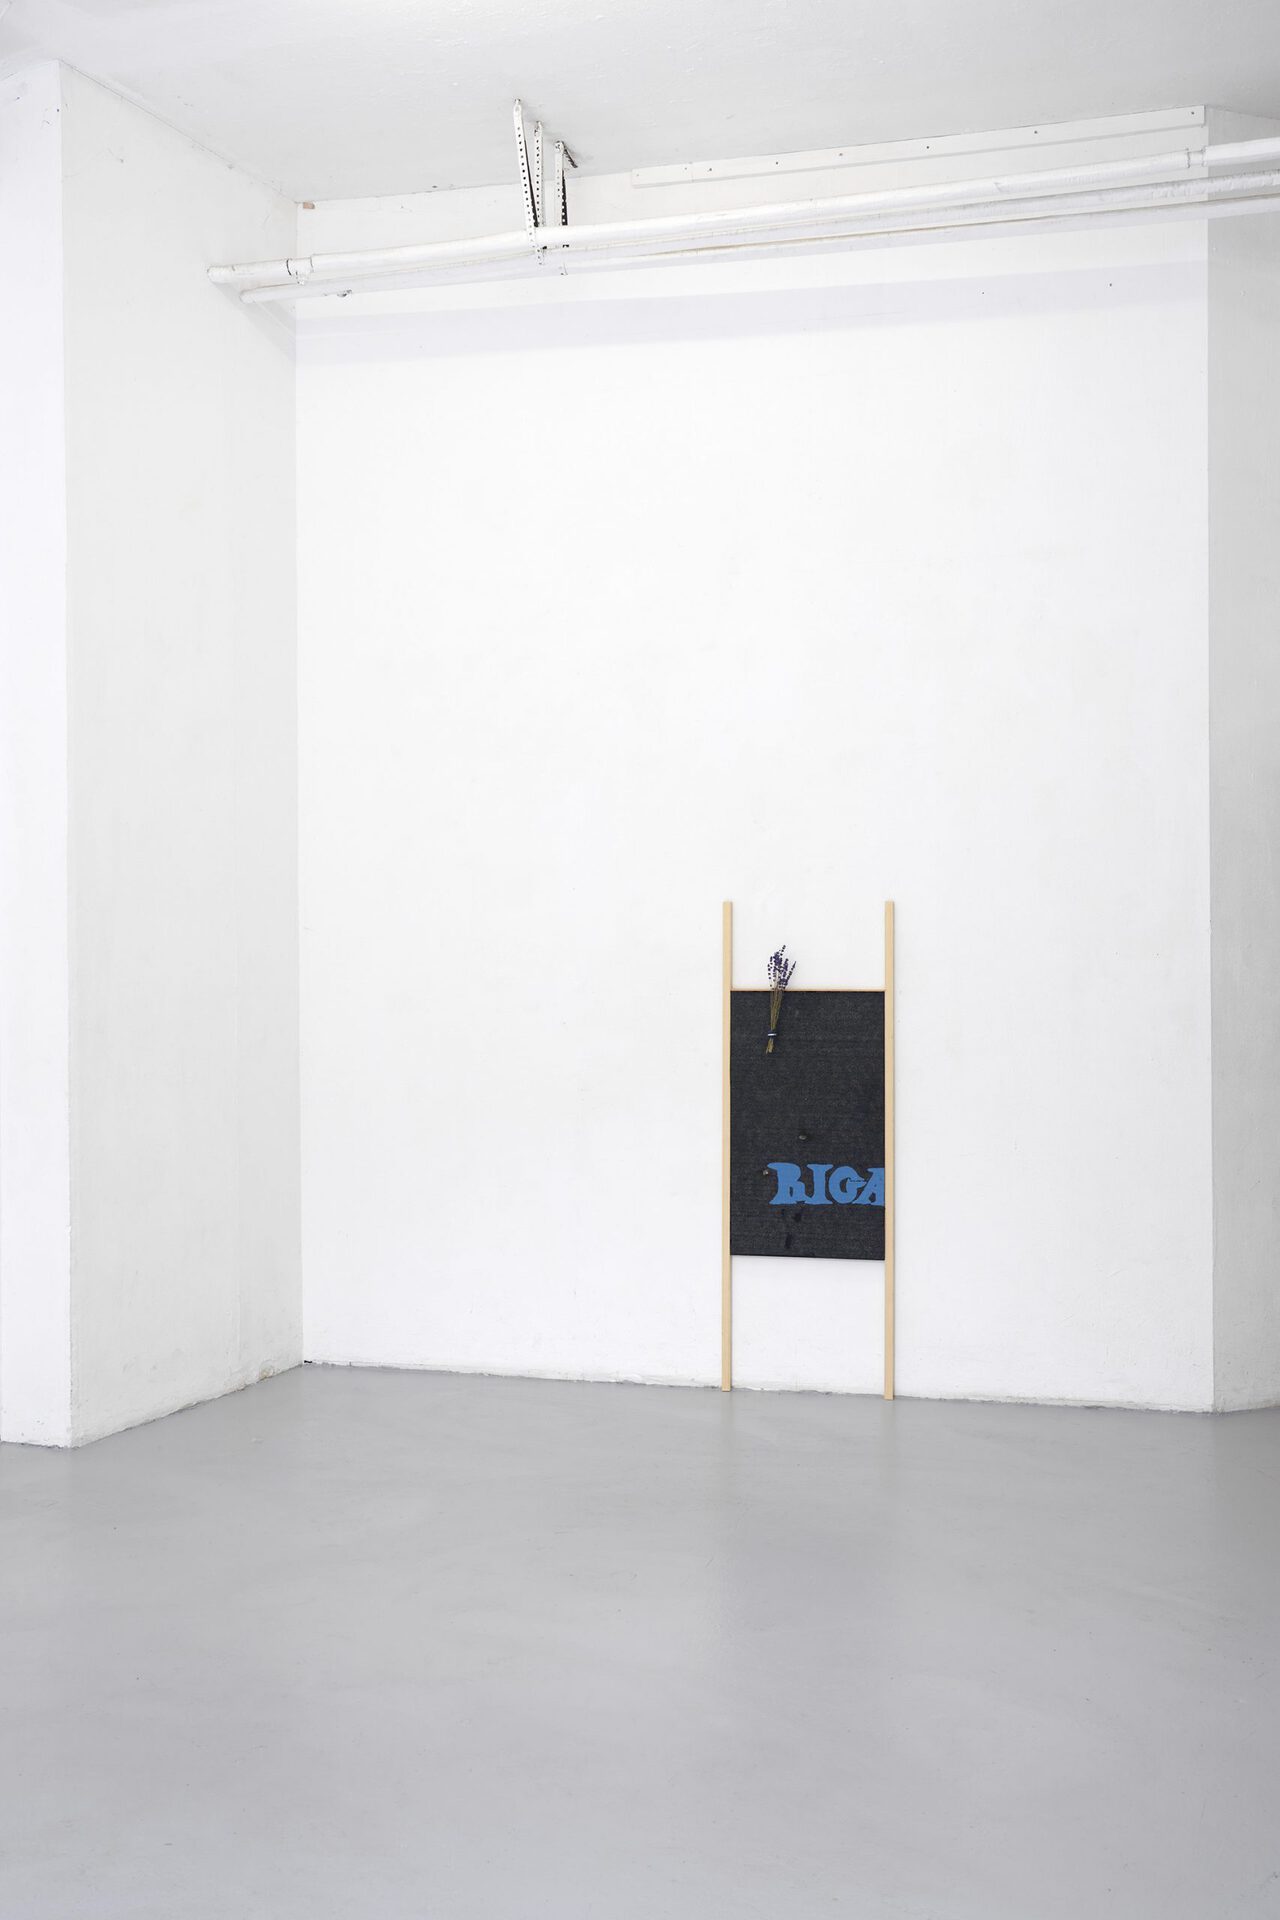 Stephan Idé, Baltische Briefe 8, 2021, multiplex, tar paper, lacquer, lavender, 105x43 cm